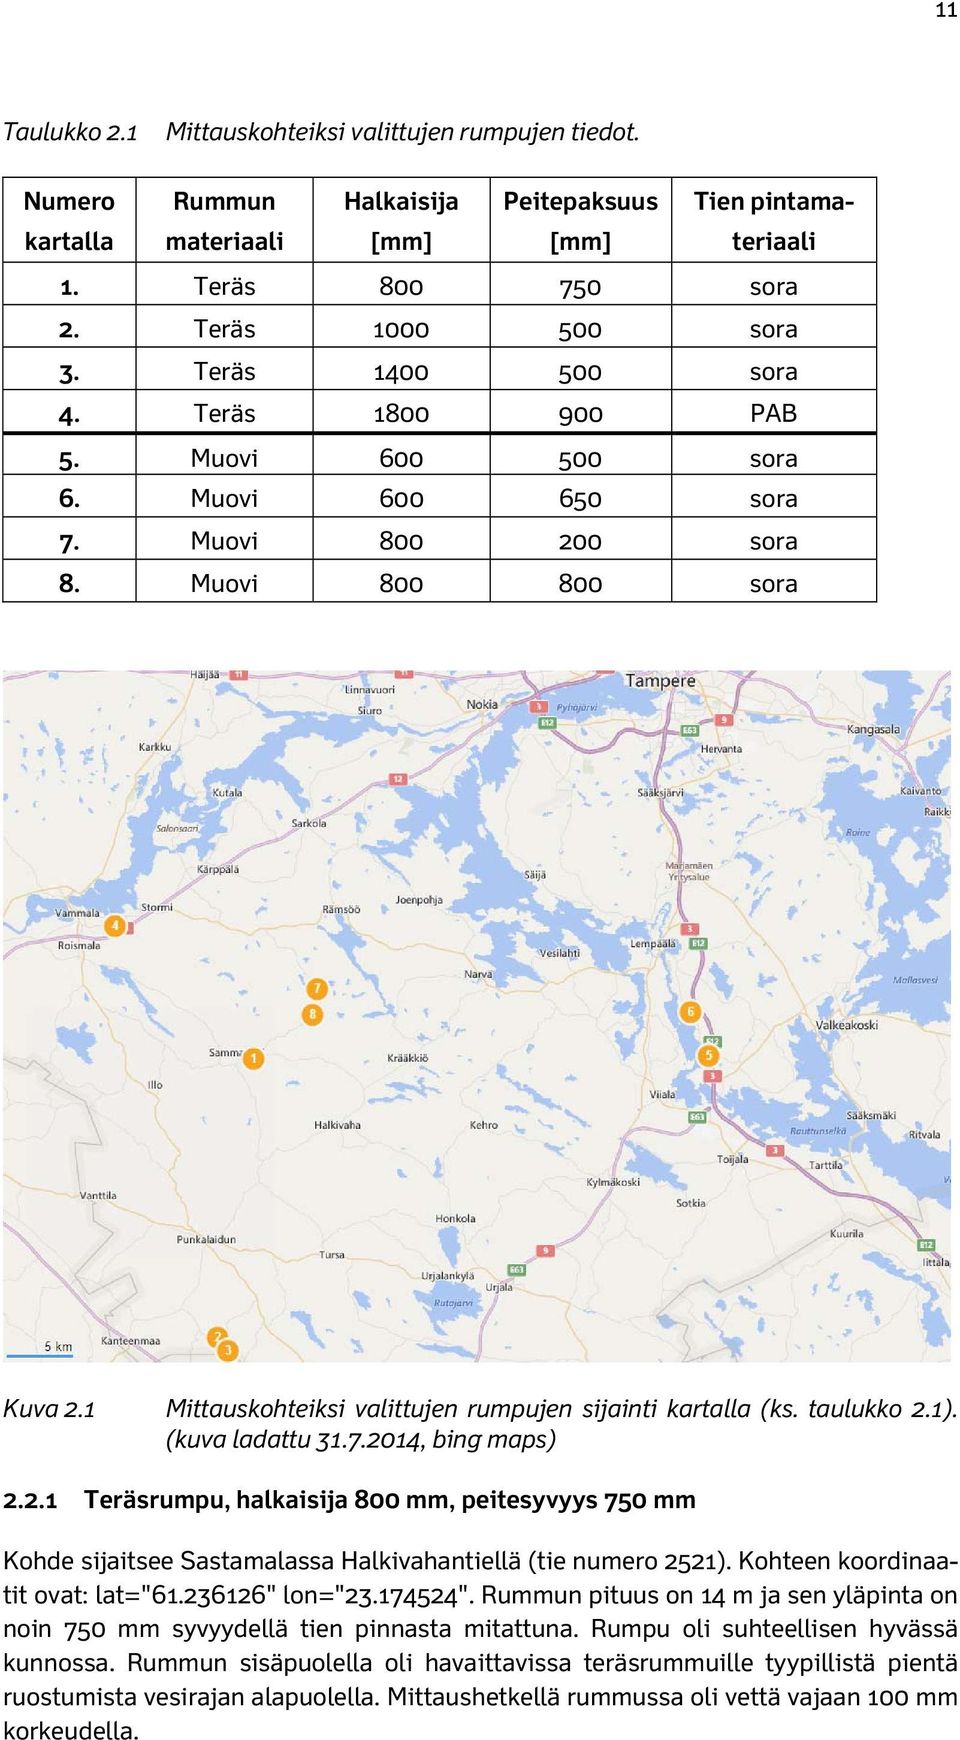 taulukko 2.1). (kuva ladattu 31.7.2014, bing maps) 2.2.1 Teräsrumpu, halkaisija 800 mm, peitesyvyys 750 mm Kohde sijaitsee Sastamalassa Halkivahantiellä (tie numero 2521).